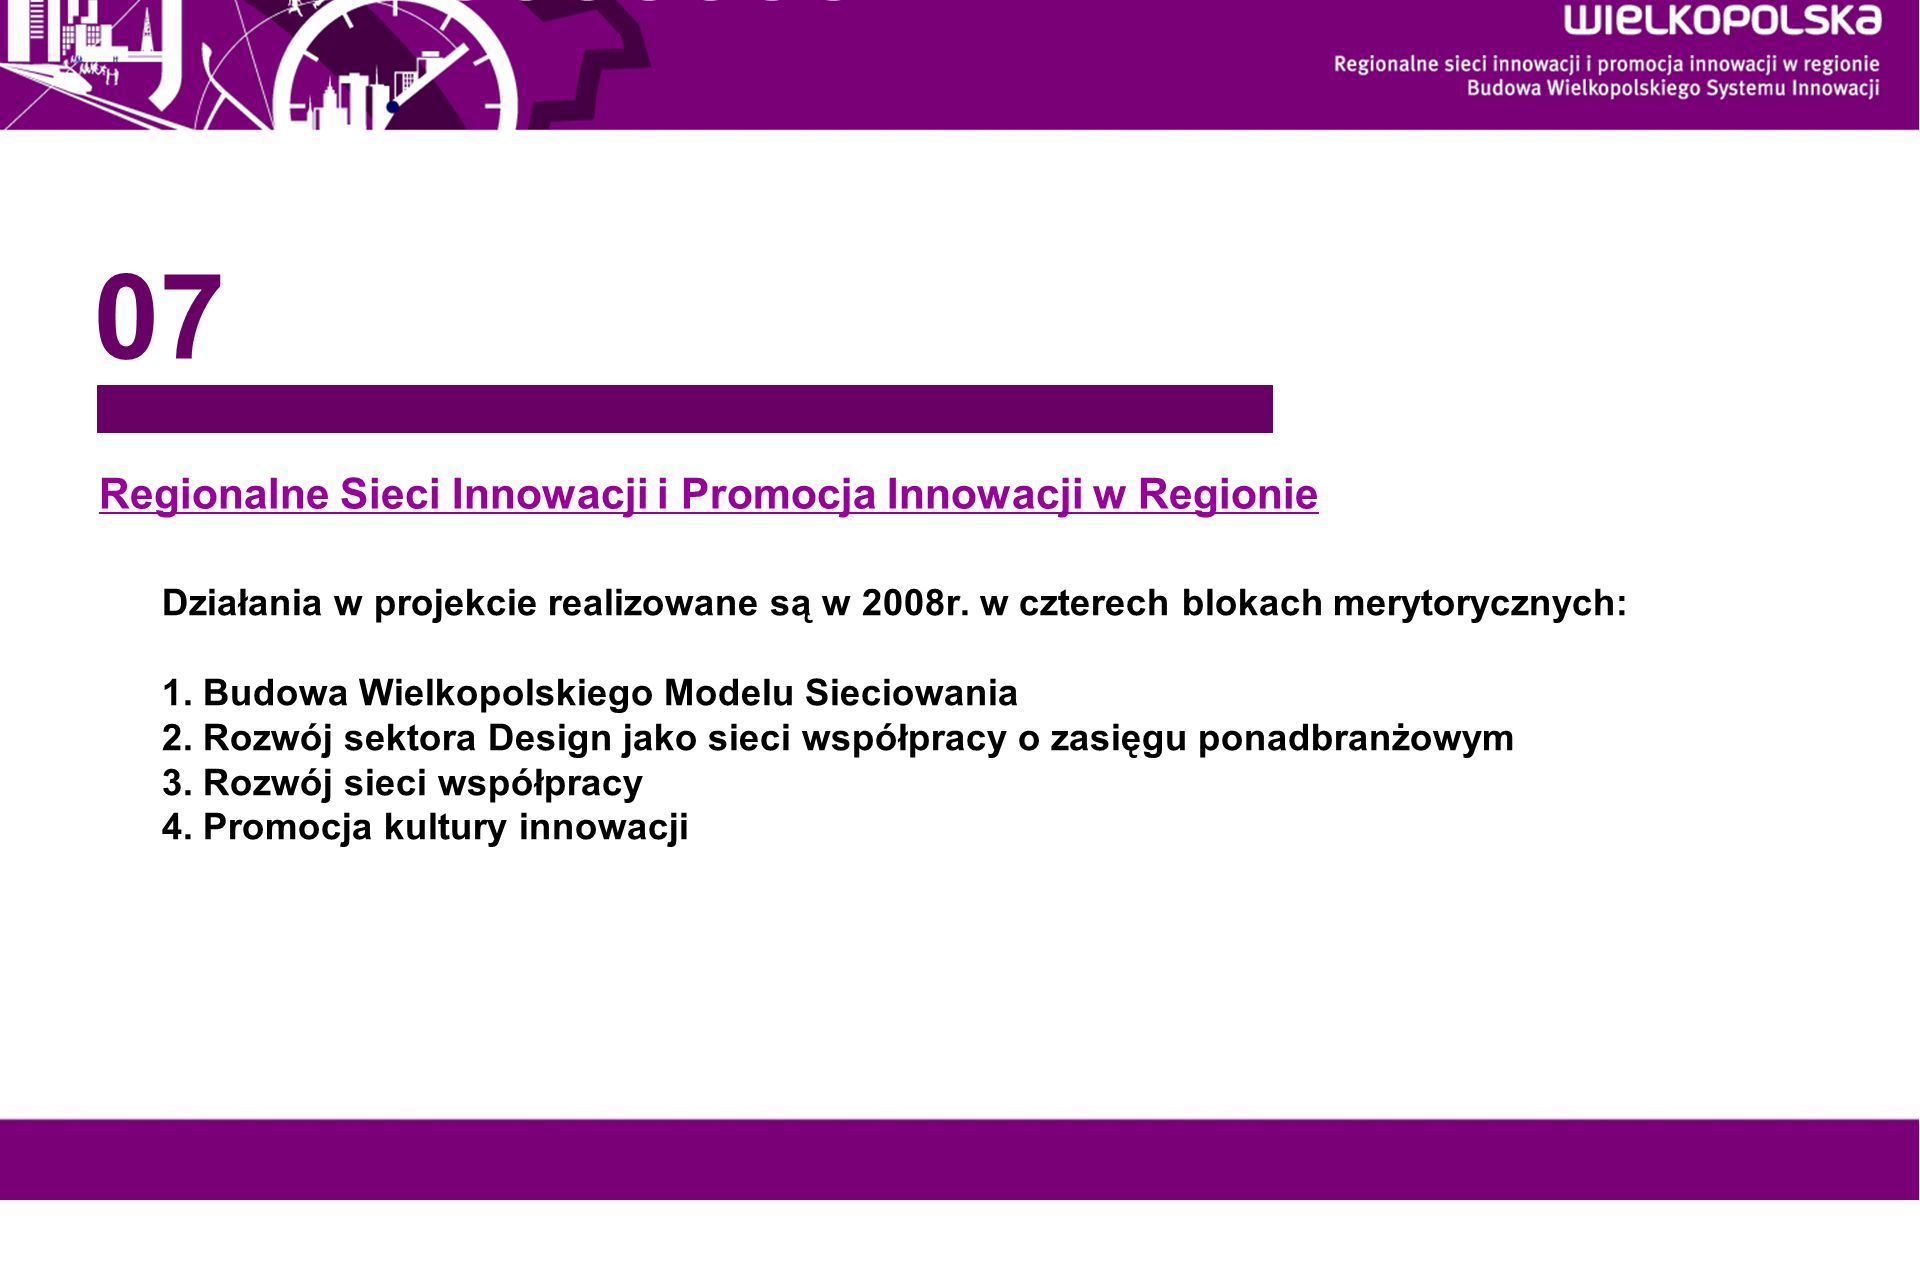 Regionalne Sieci Innowacji i Promocja Innowacji w Regionie